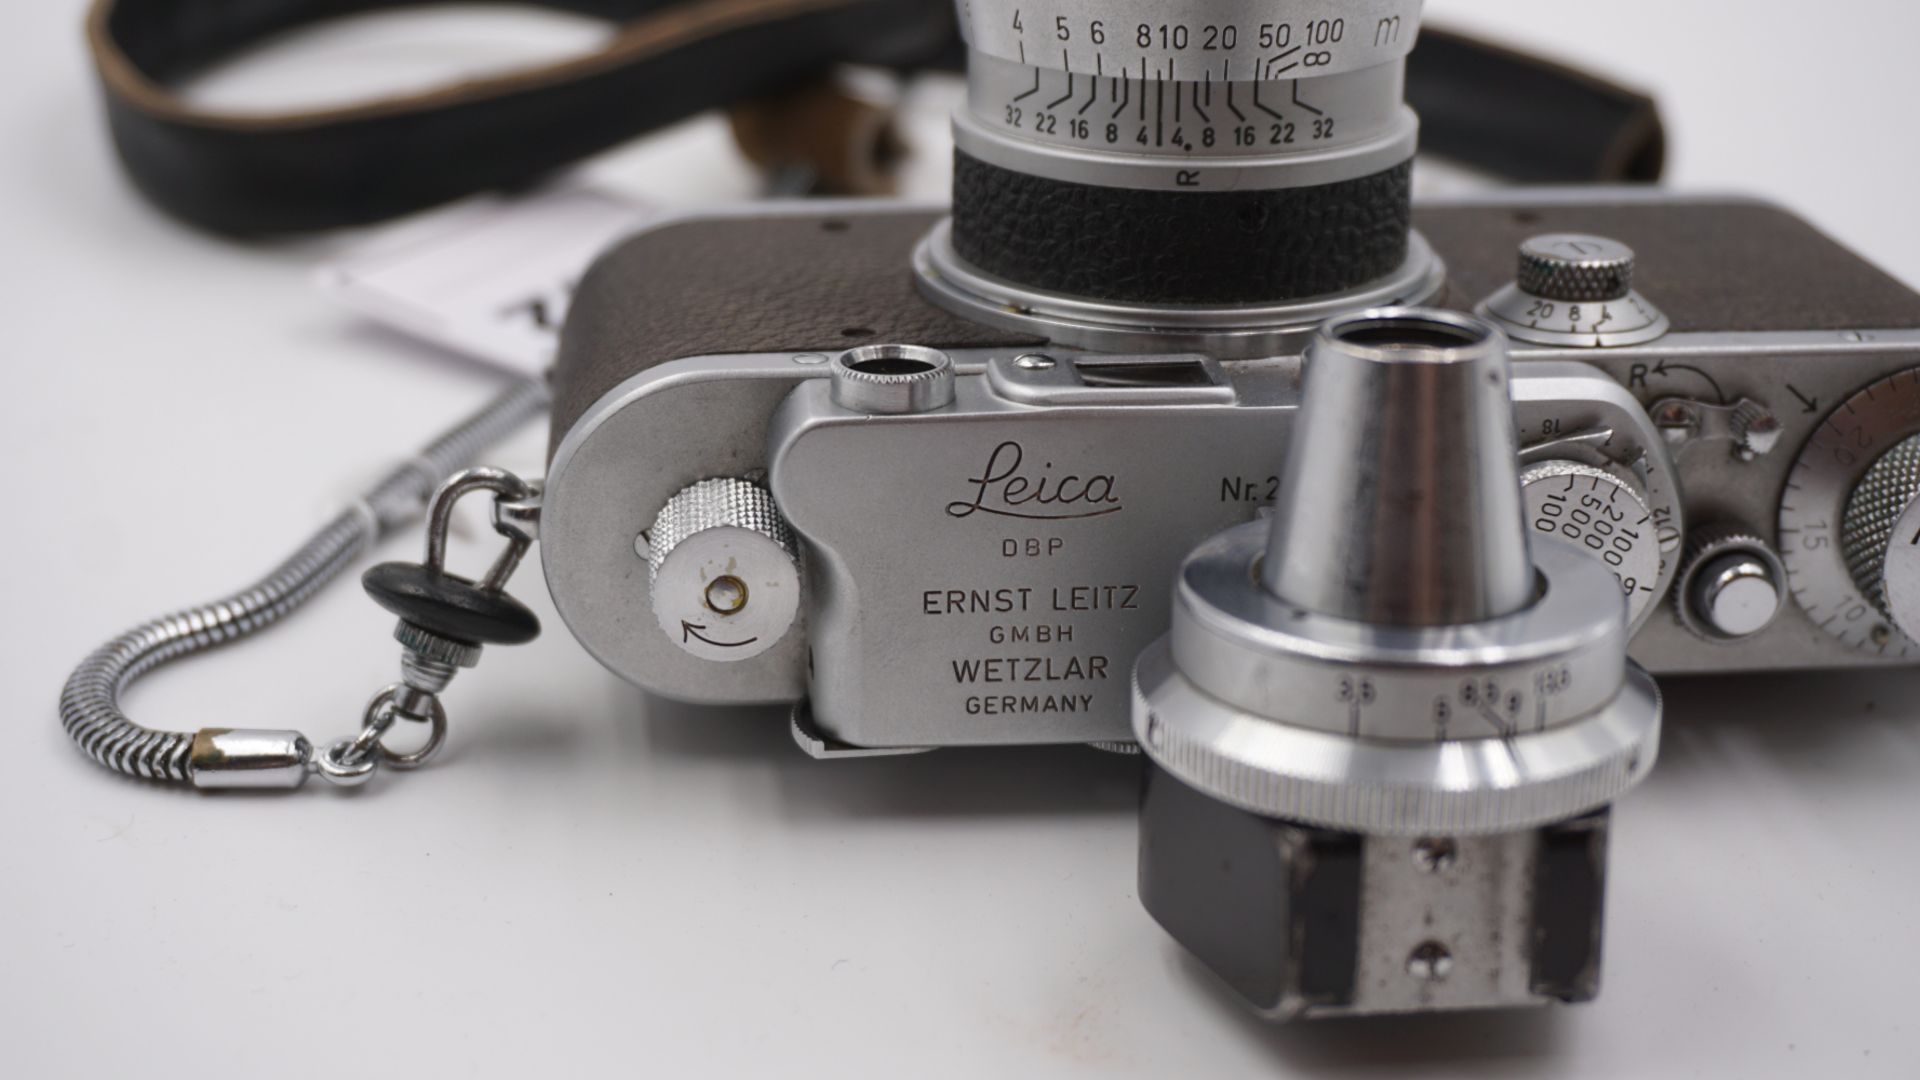 1 Fotoapparat LEICA "IIIa" wohl um 1938, num. "295977"/bez. "Ernst LEITZ GmbH, Wetzlar" - Image 3 of 4